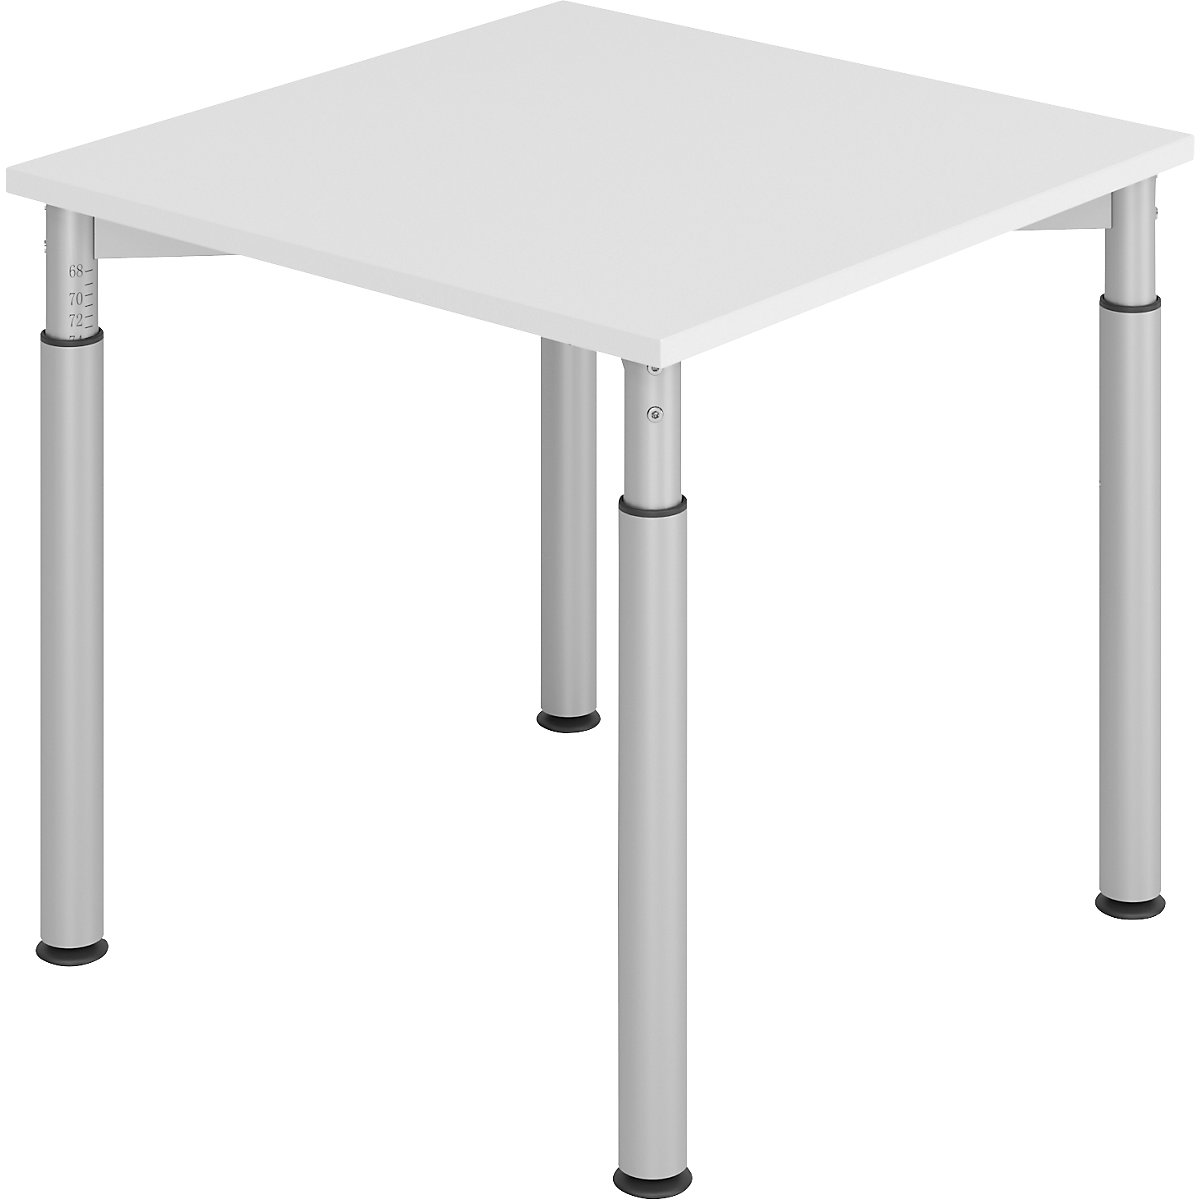 Pisaći stol s postoljem s 4 noge VERA-ZWO, s mogućnošću namještanja visine, ŠxD 800 x 800 mm, ploča u svijetlosivoj boji, postolje u aluminij srebrnoj boji-6